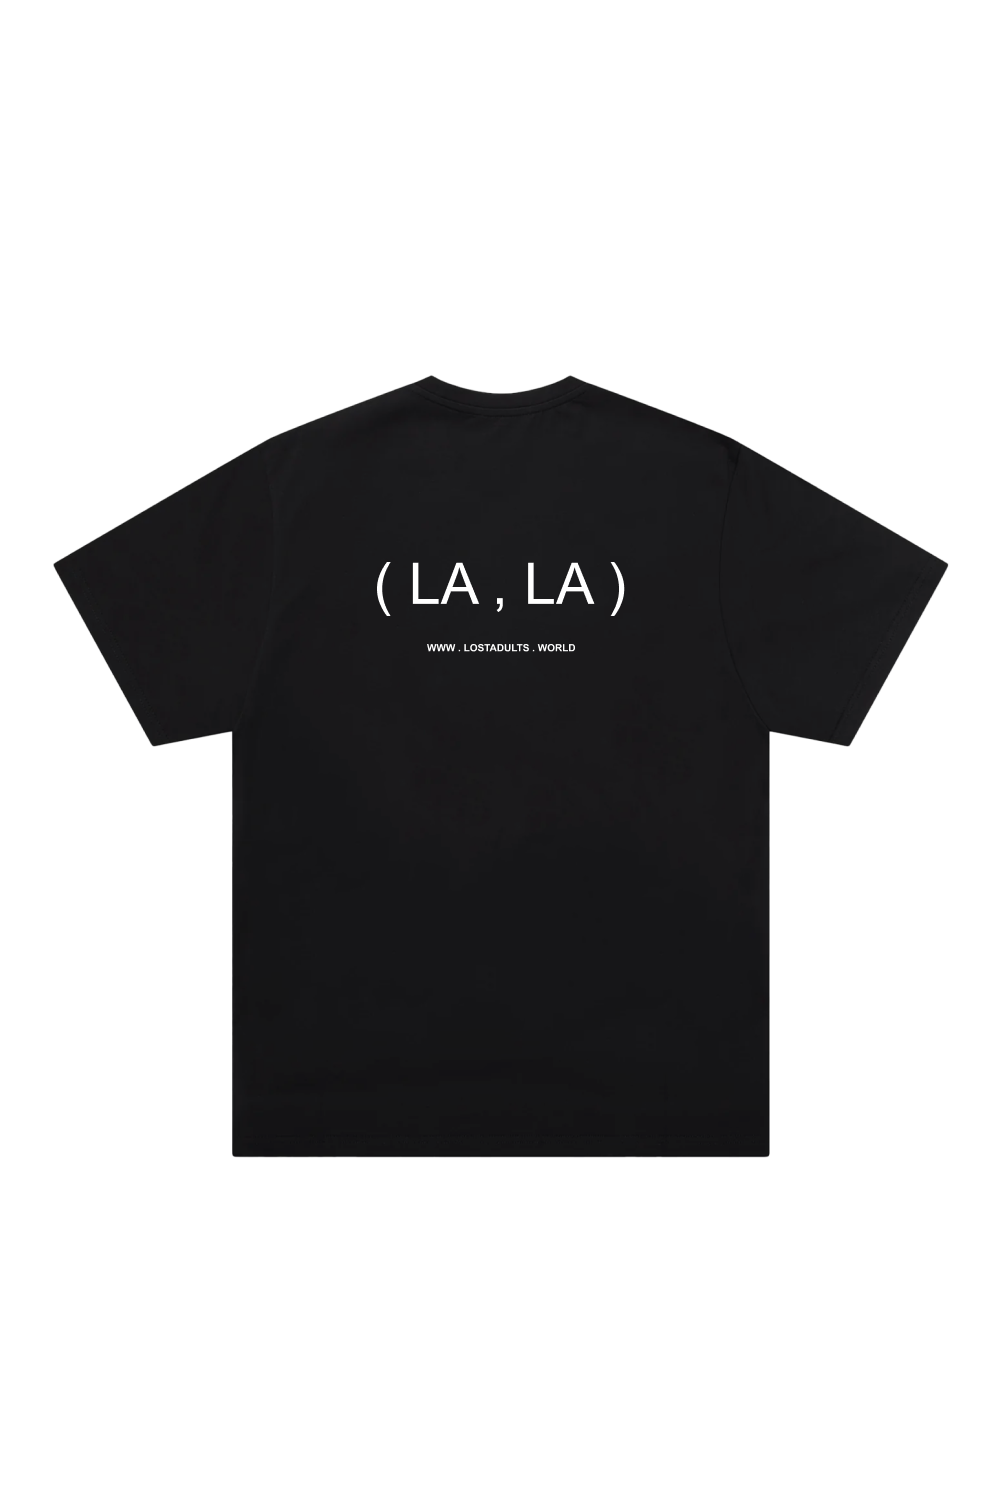 ( LA, LA ) TSHIRT BLACK